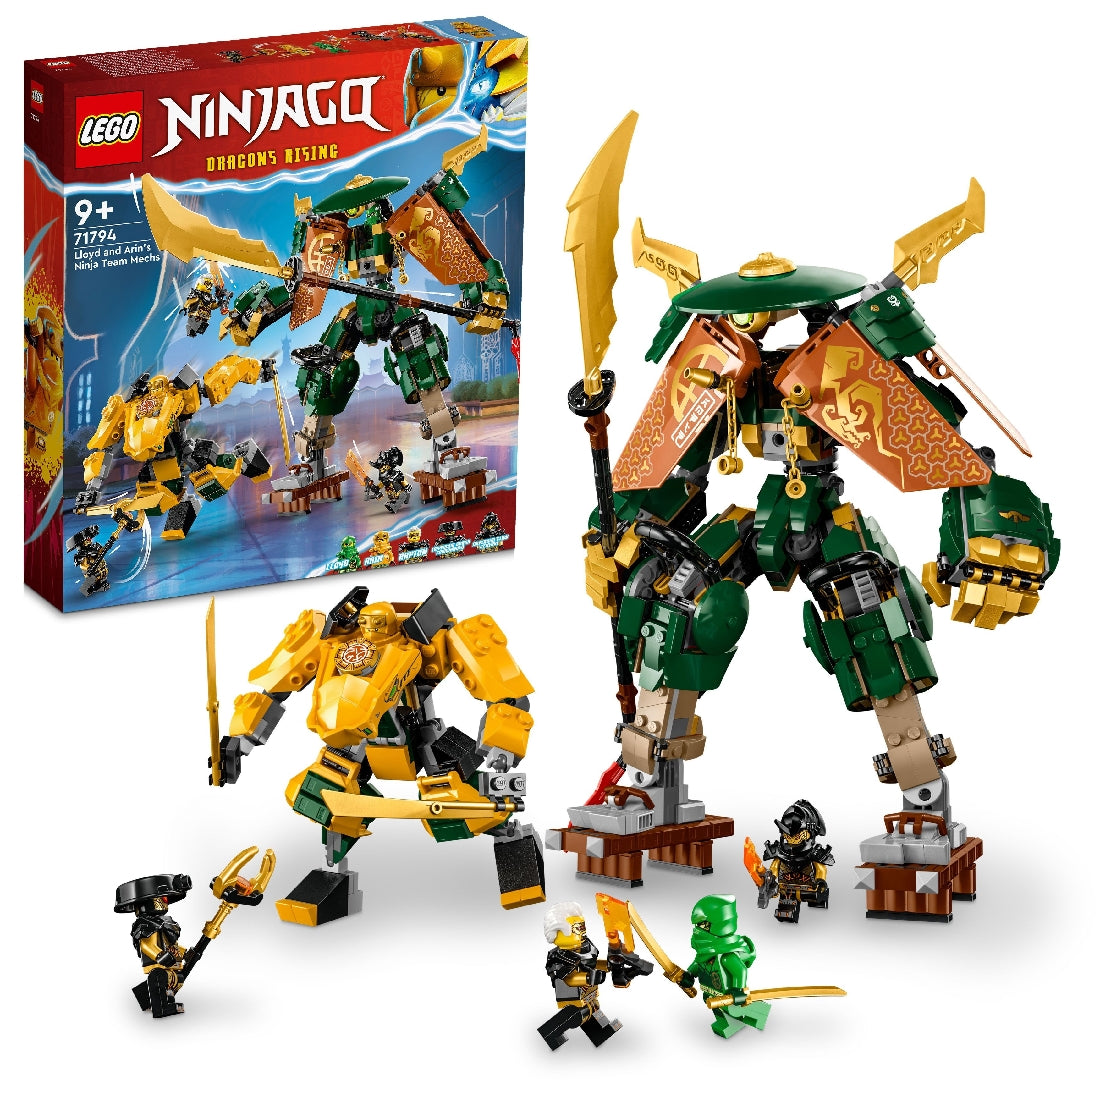 LEGO NINJAGO LLOYD AND ARIN'S NINJA TEAM MECHS 71794 AGE: 9+